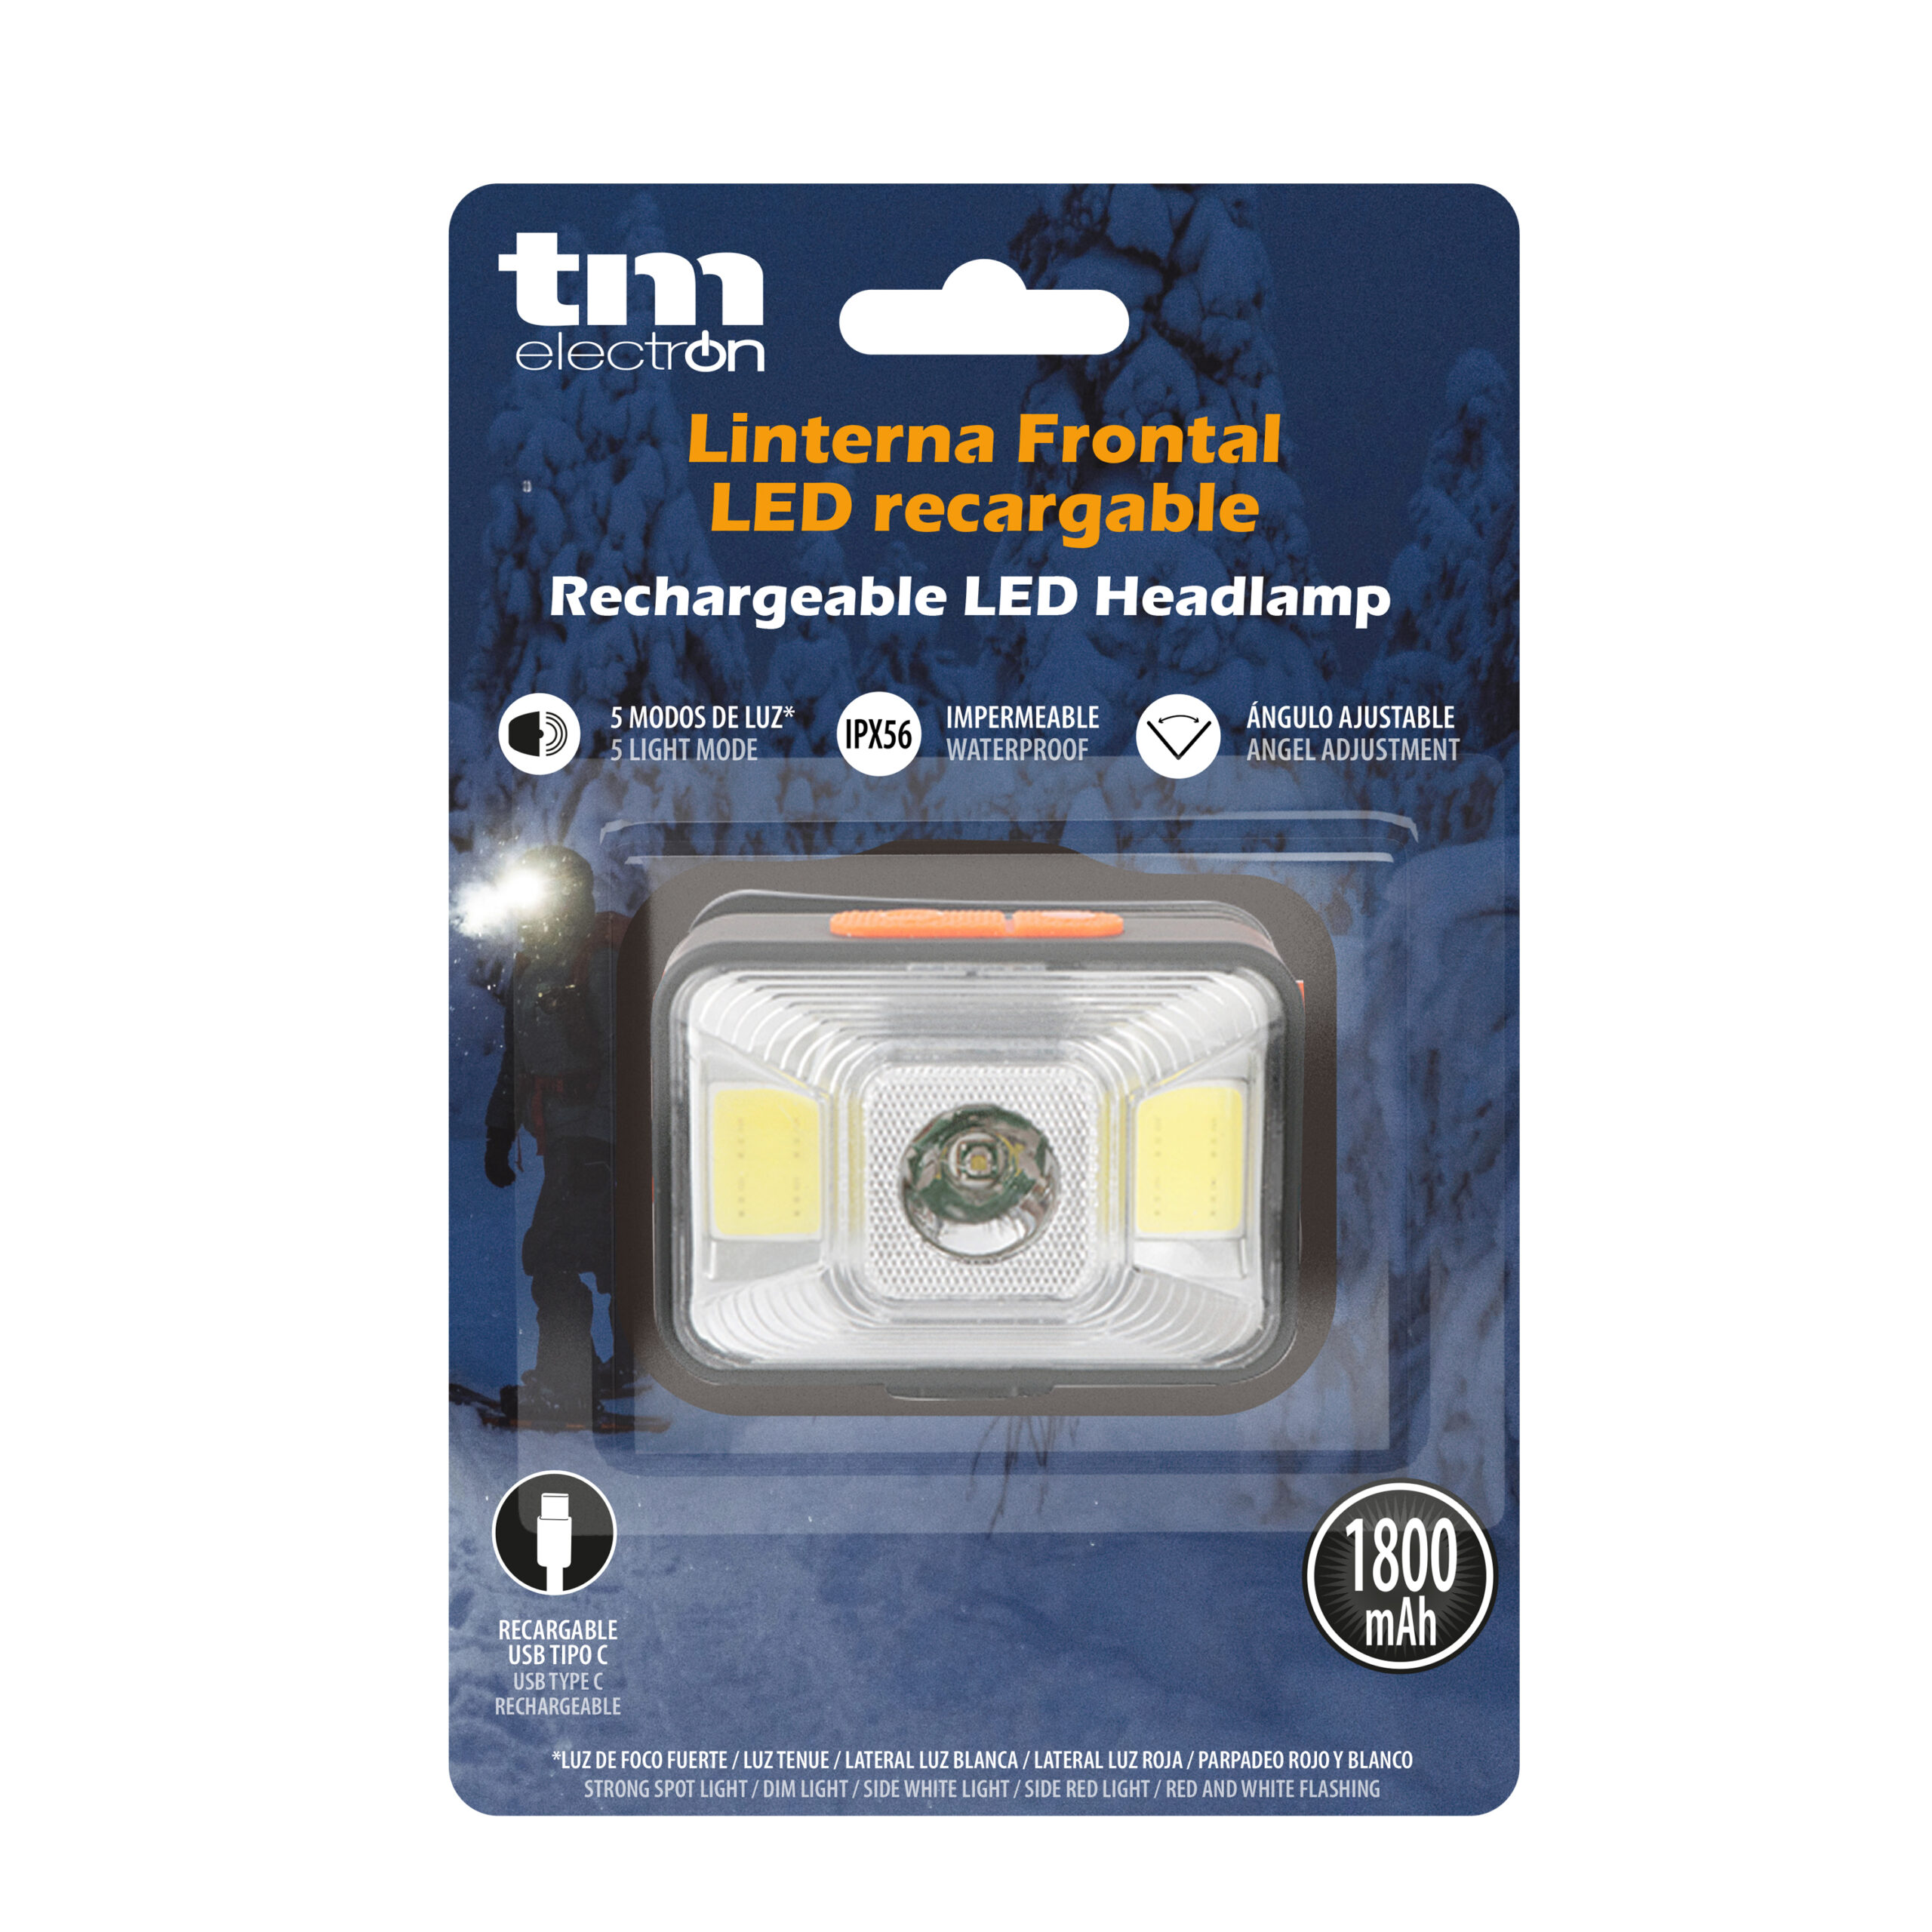 Importadora y Distribuidora Monar - Linterna Frontal LED De Alta Potencia  ▪️ Un interruptor de botón soporta 4 modos de trabajo: 1 LED/2 LED/3 LED/intermitente.  ▪️ Se proporciona una base ajustable para